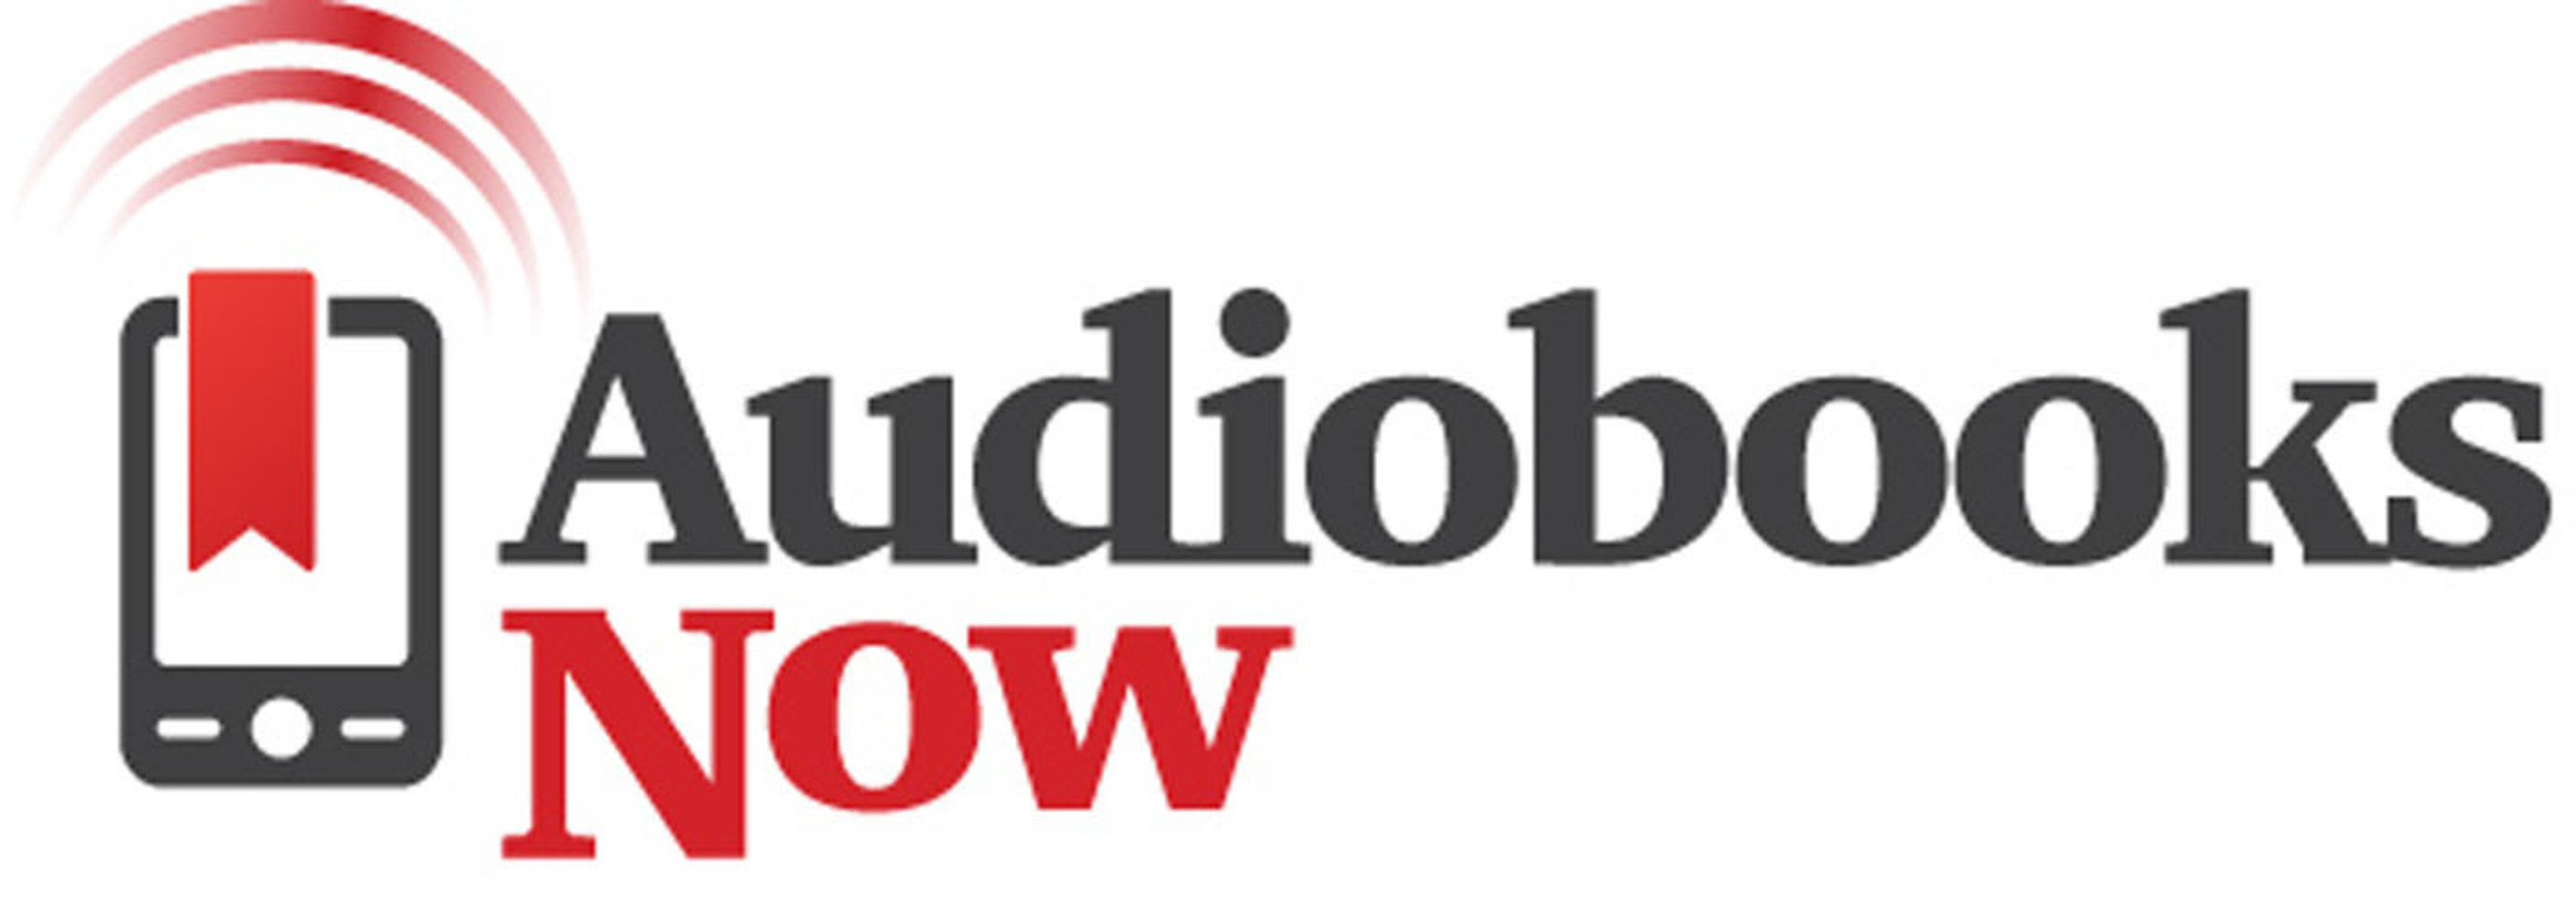 AudiobooksNow logo. (PRNewsFoto/AudiobooksNow) (PRNewsFoto/AUDIOBOOKSNOW)